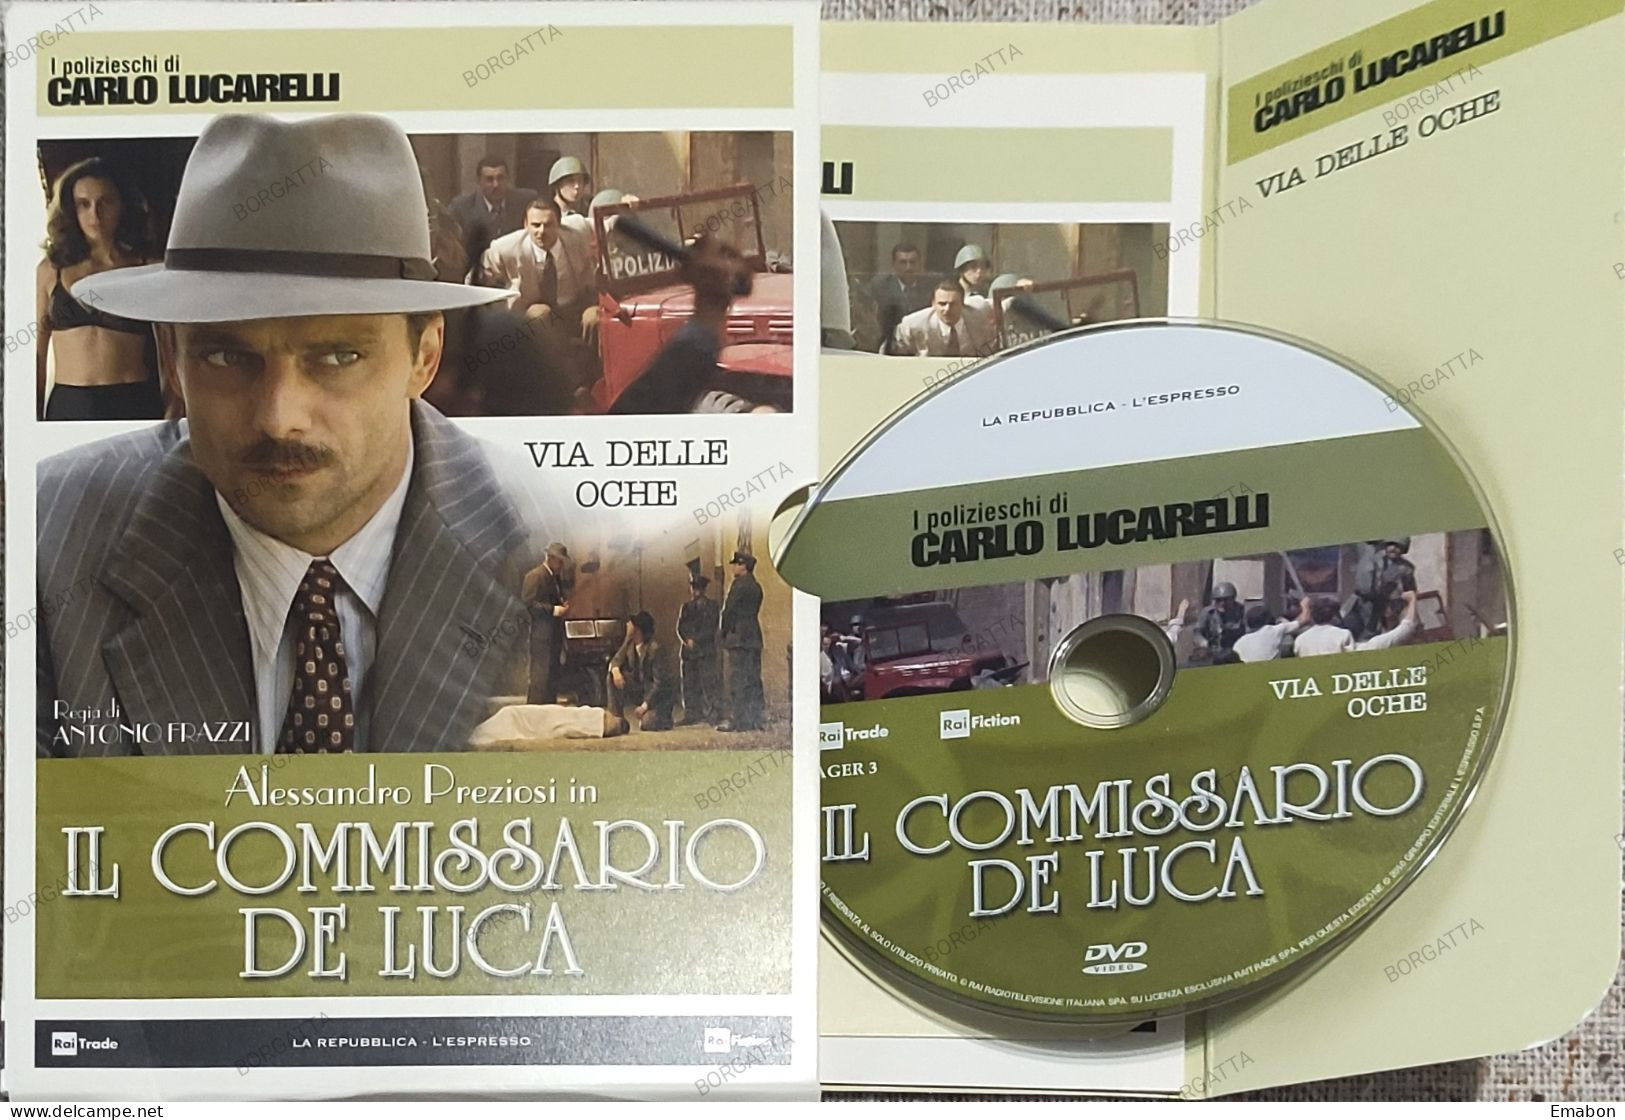 BORGATTA - POLICE -  Dvd " IL COMMISSARIO DE LUCA  VIA DELLE OCHE " ALESSANDRO PREZIOSI -  PAL 2- Usato In Buono Stato - Crime